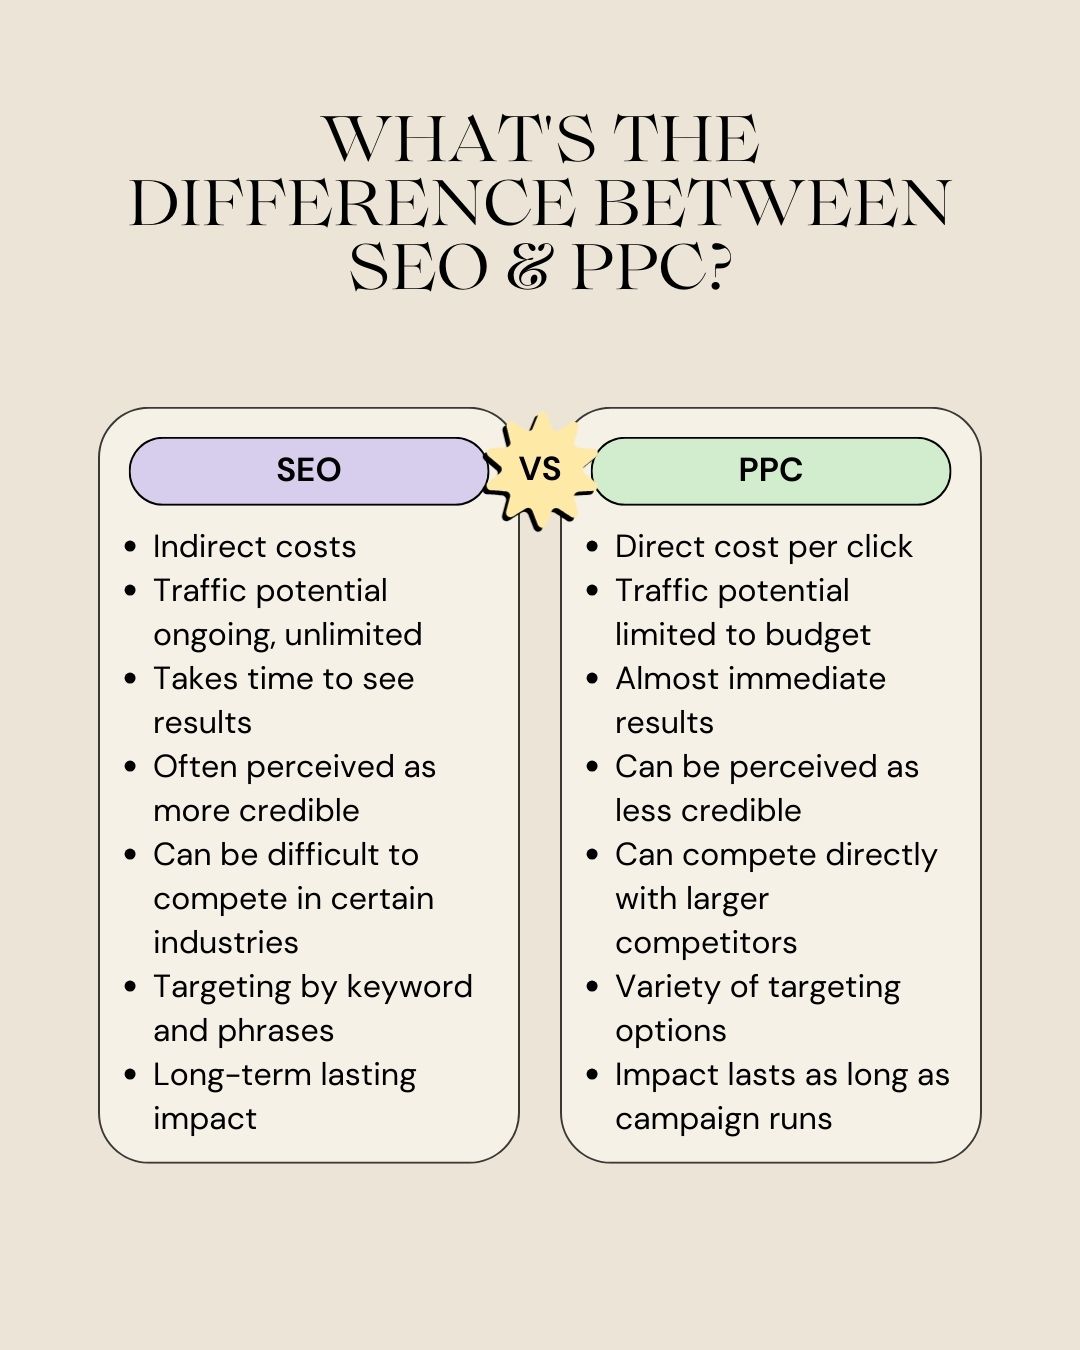 Eine Vergleichstabelle mit den wichtigsten Unterschieden zwischen SEO und PPC.